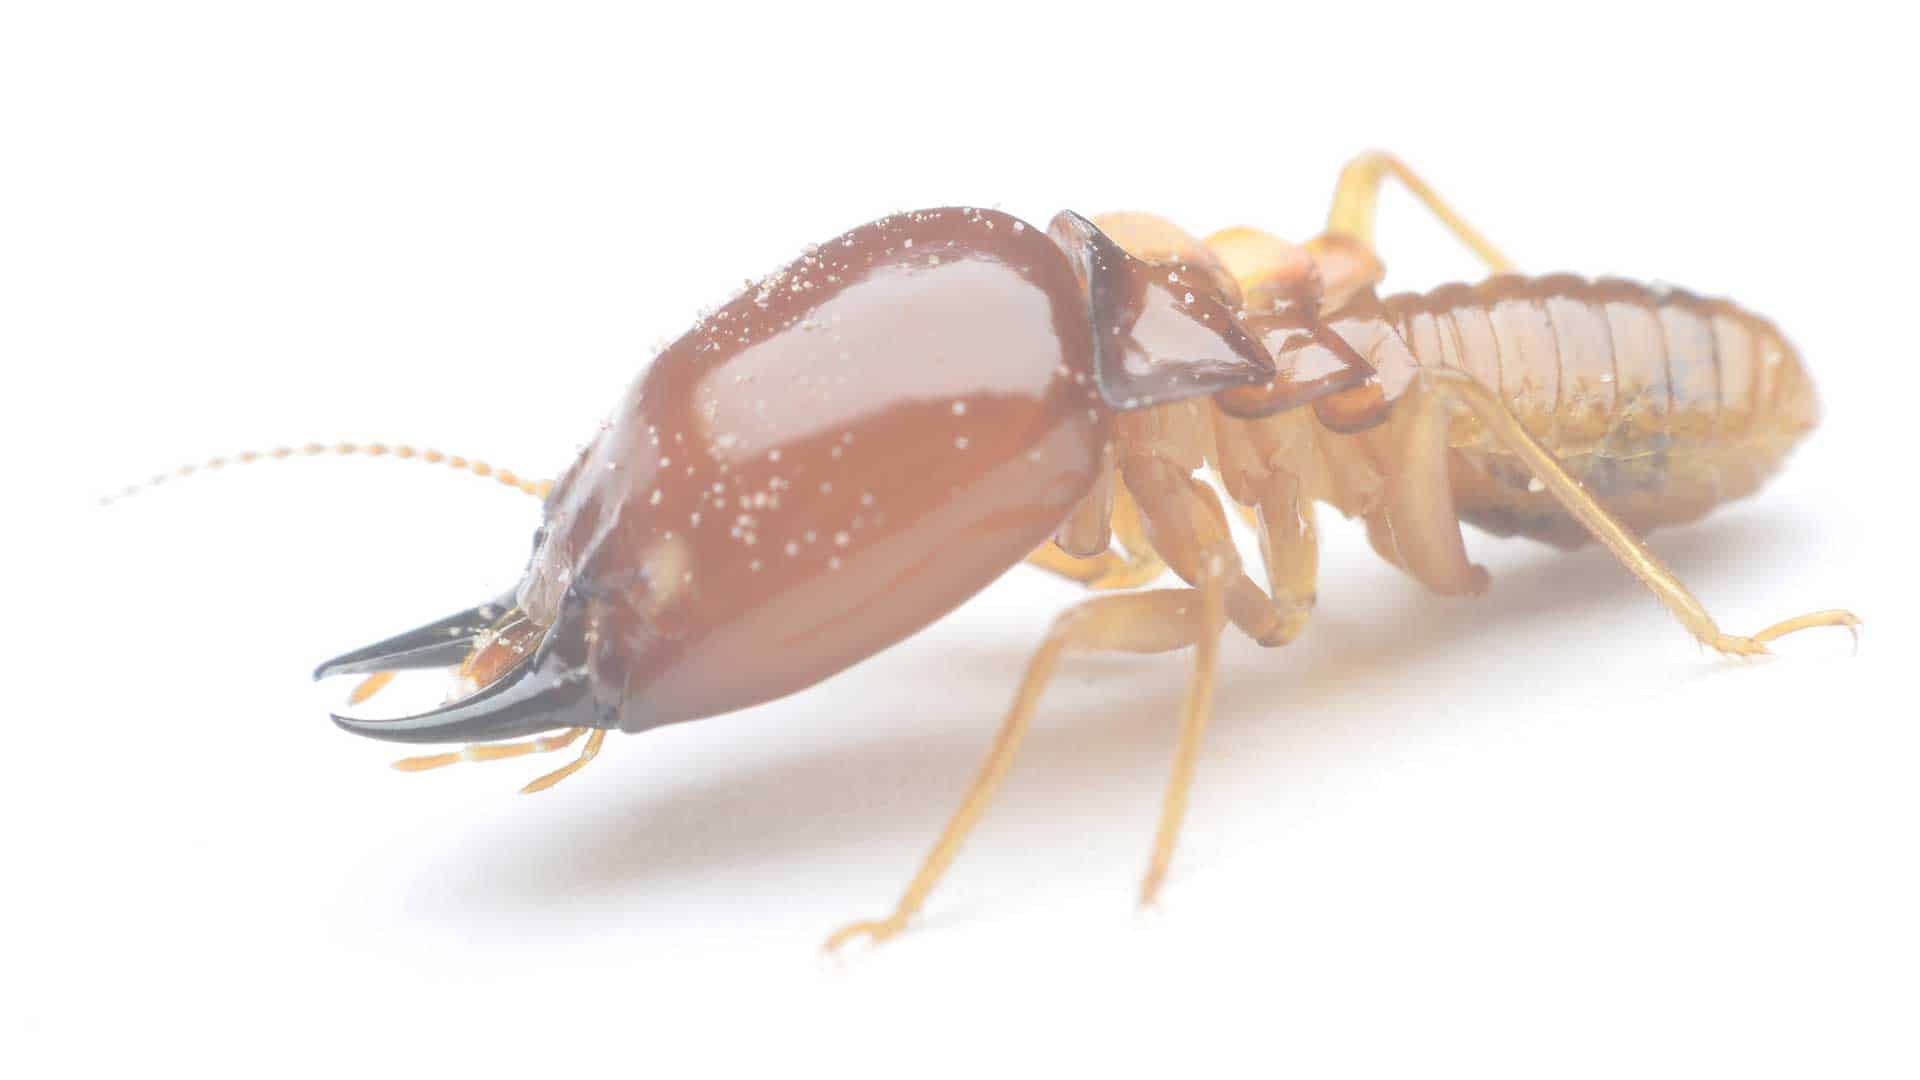 Termite in Arizona